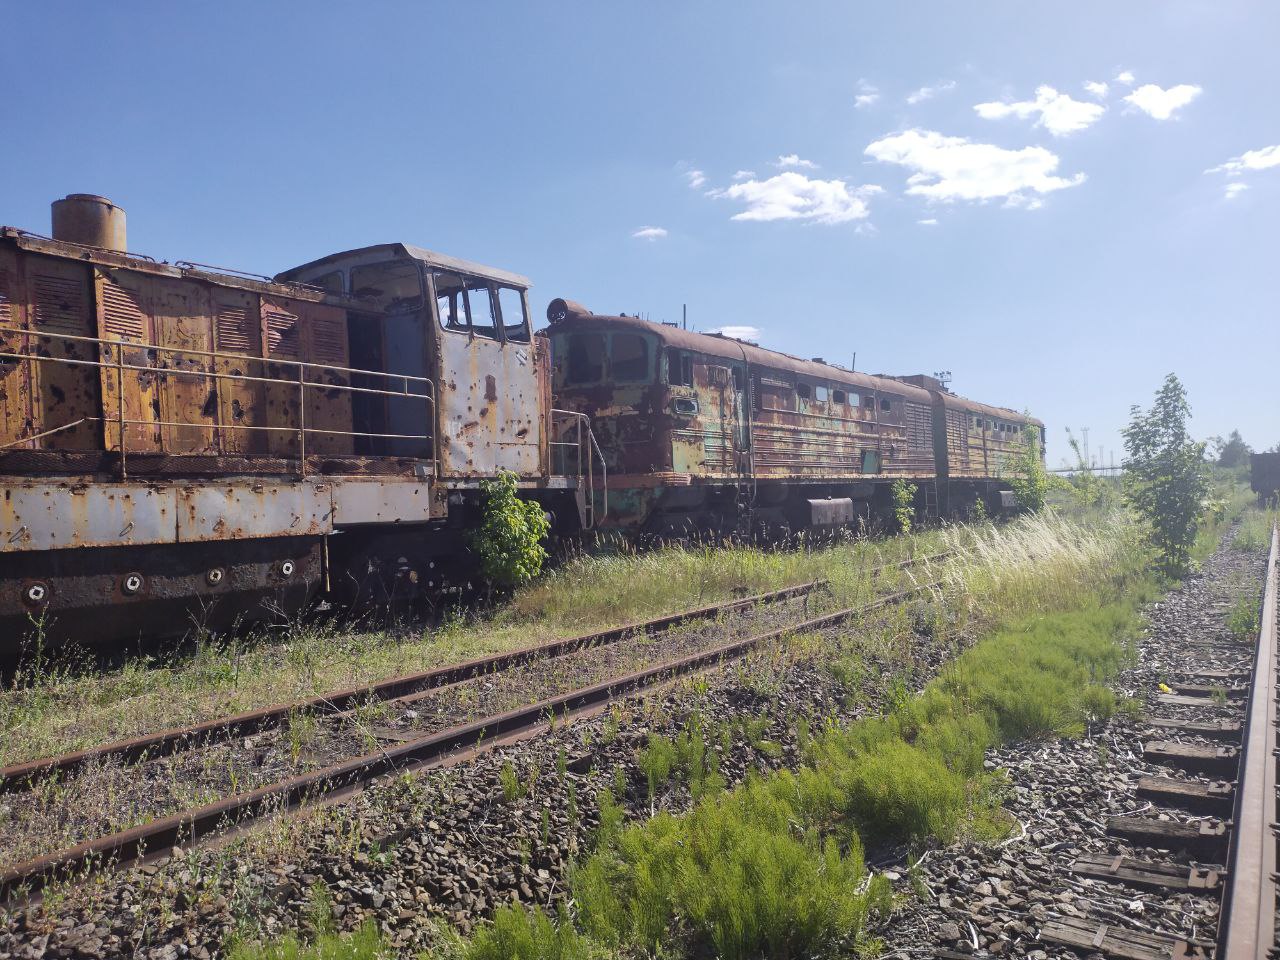 ТГМ9-0001; ТЭ3-7643; Донецкая железная дорога — Разные фотографии